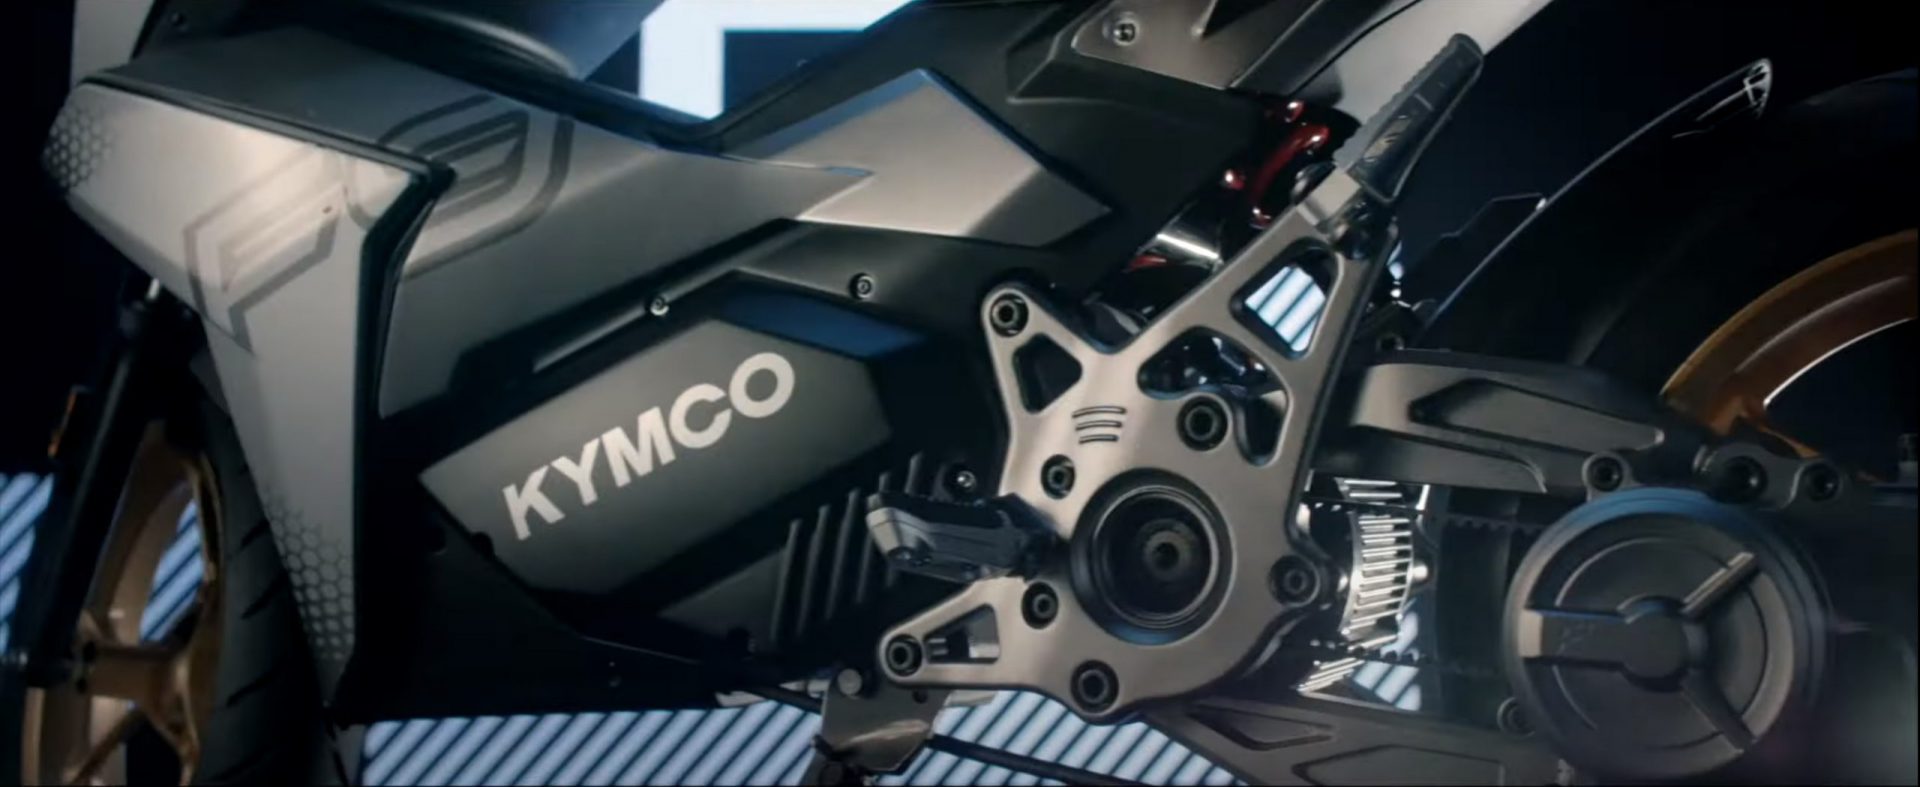 Elektrisk motorcykel från KYMCO